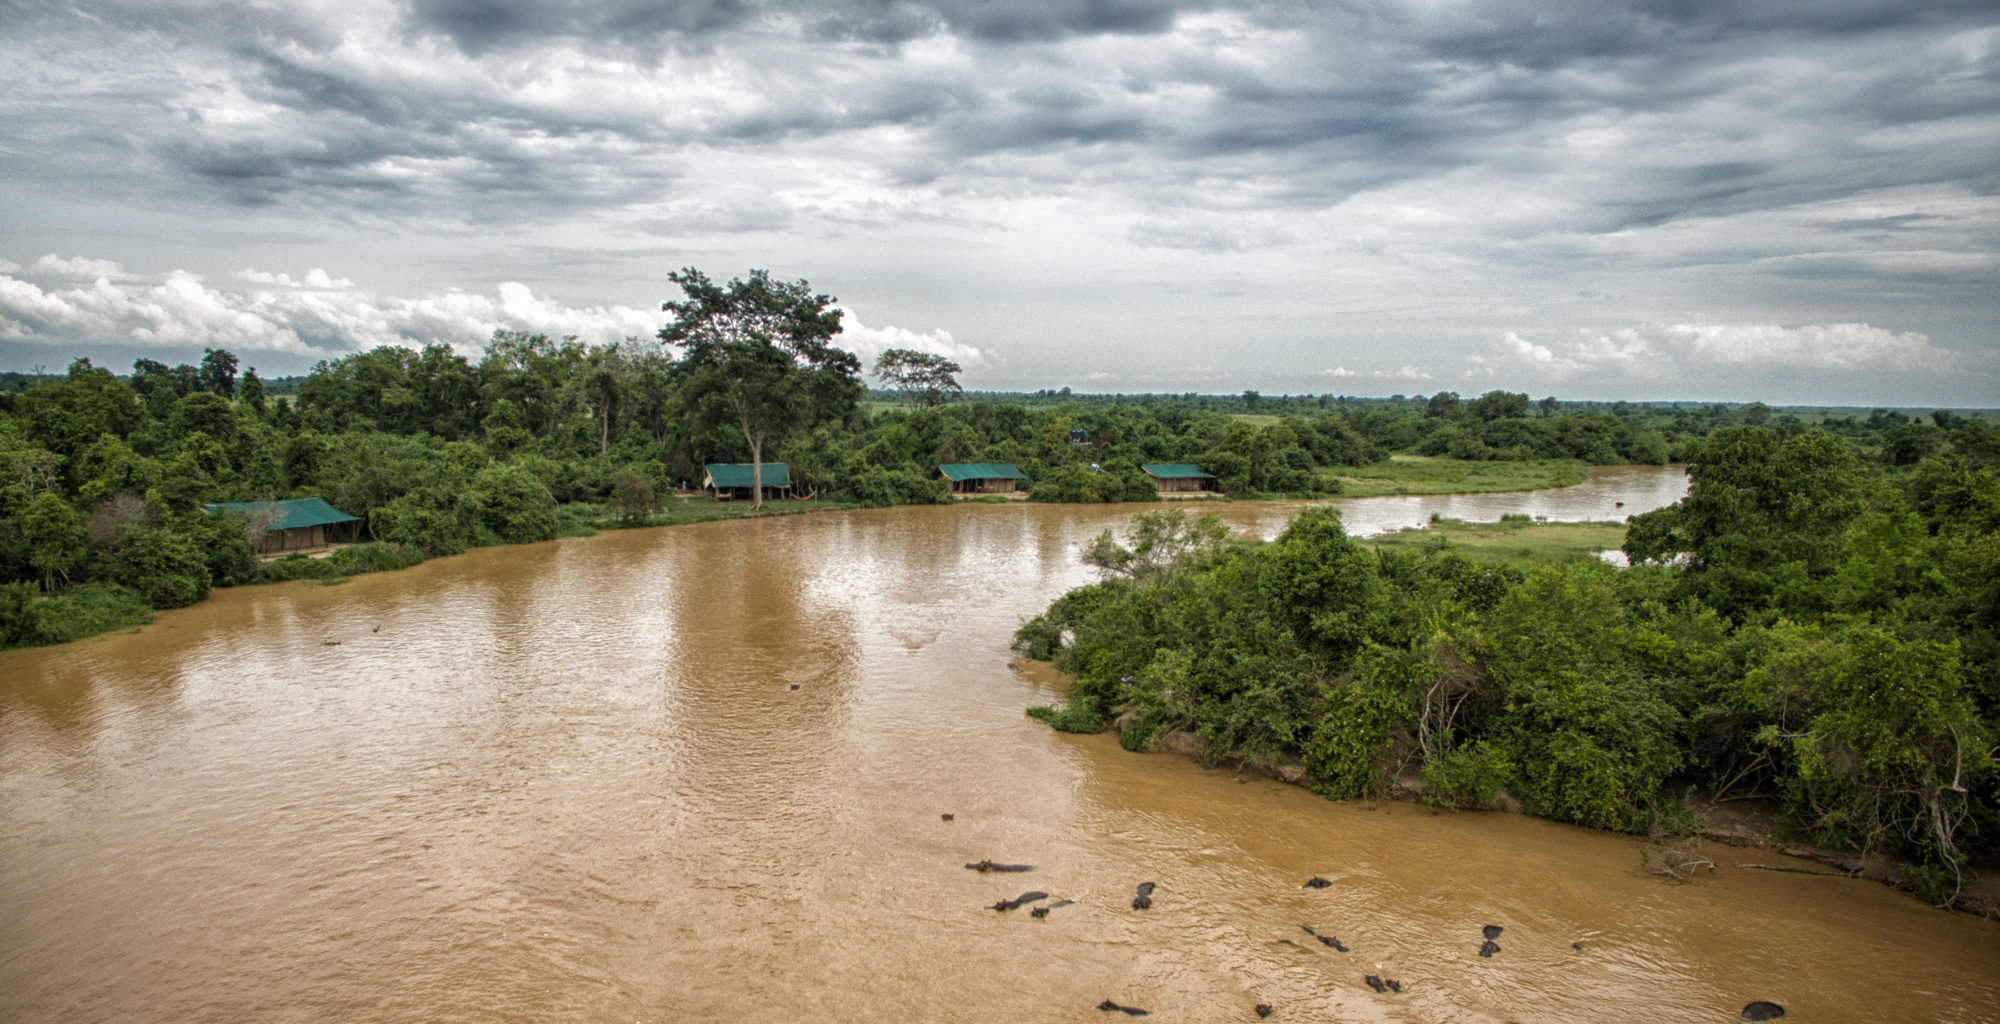 DRC-Verunga-Lulimbi-Tented-Camp-River